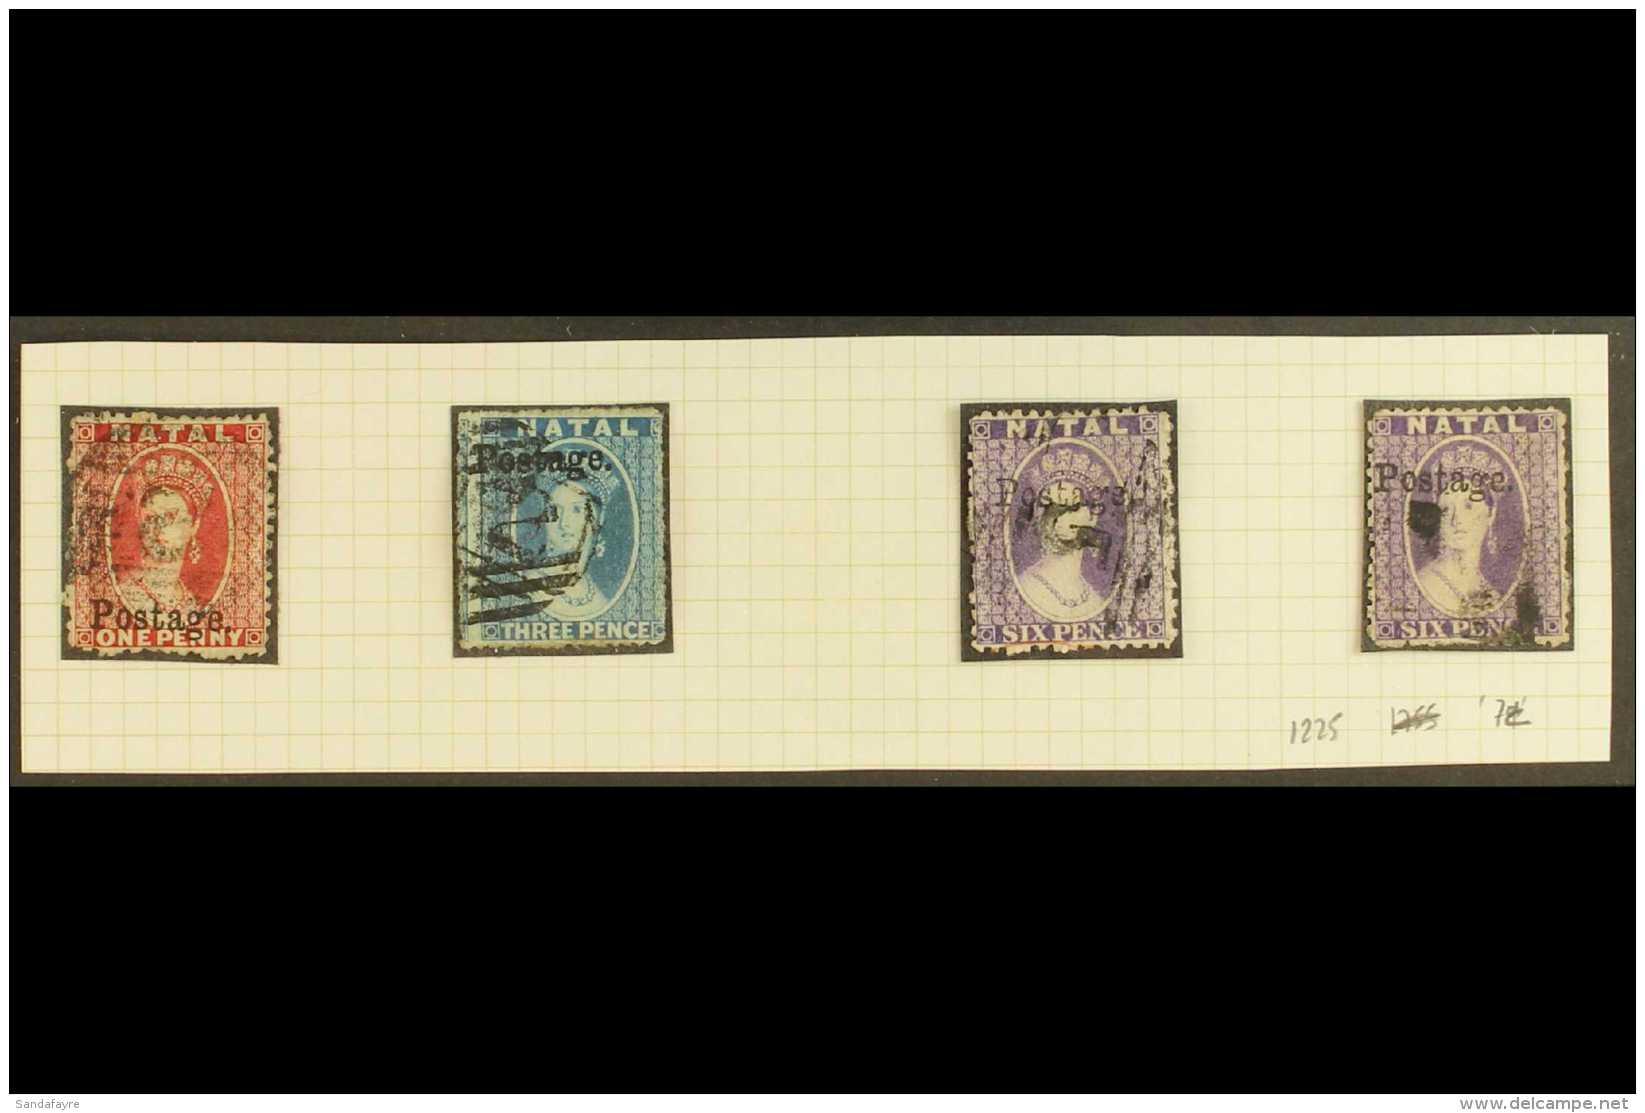 NATAL 1869 "Postage" Ovpts, 13 3/4mm Long, SG Type 7c, 1d Bright Red, 3d Blue Rough Perf, 6d Violet (2), SG 39,... - Non Classés